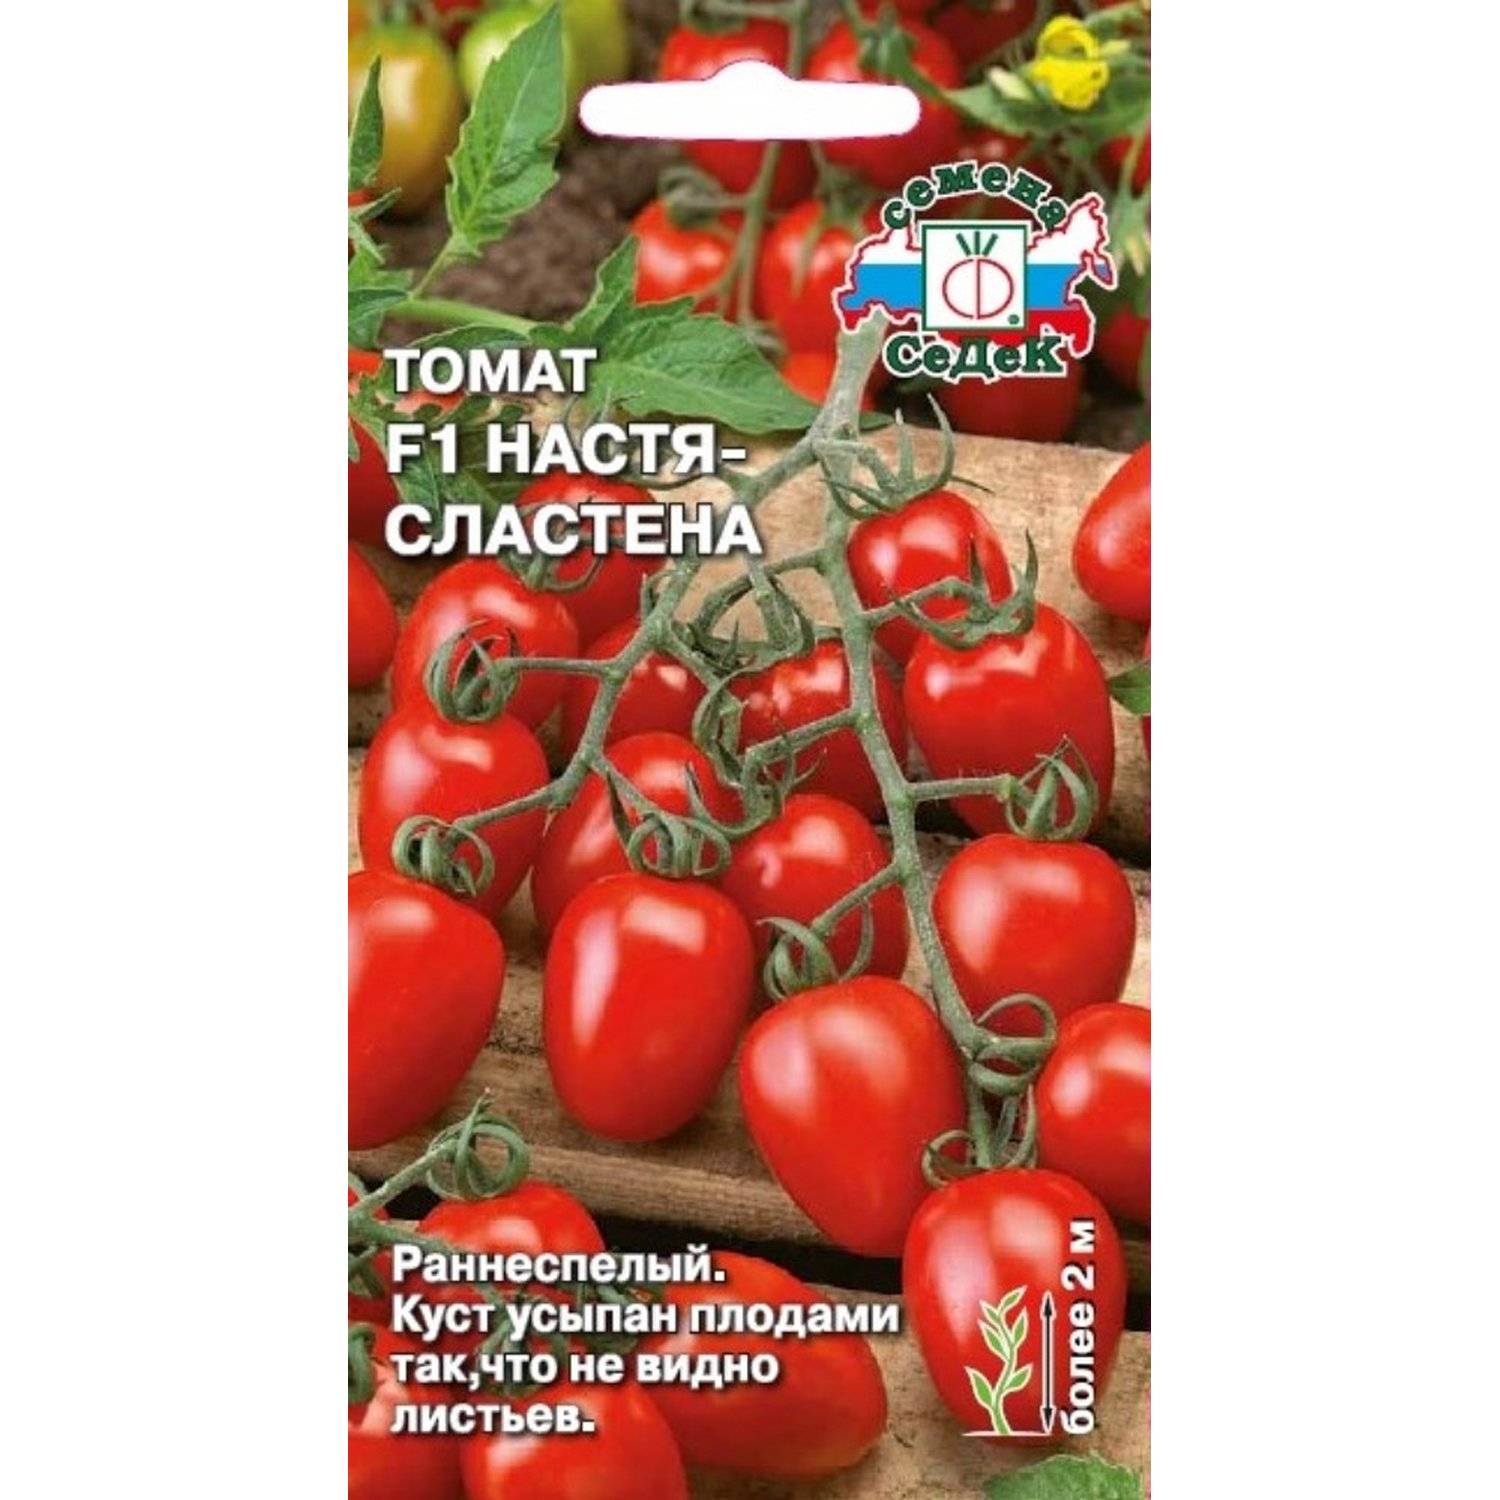 Оби каталог семян томатов заказать семена марихуаны в казахстан